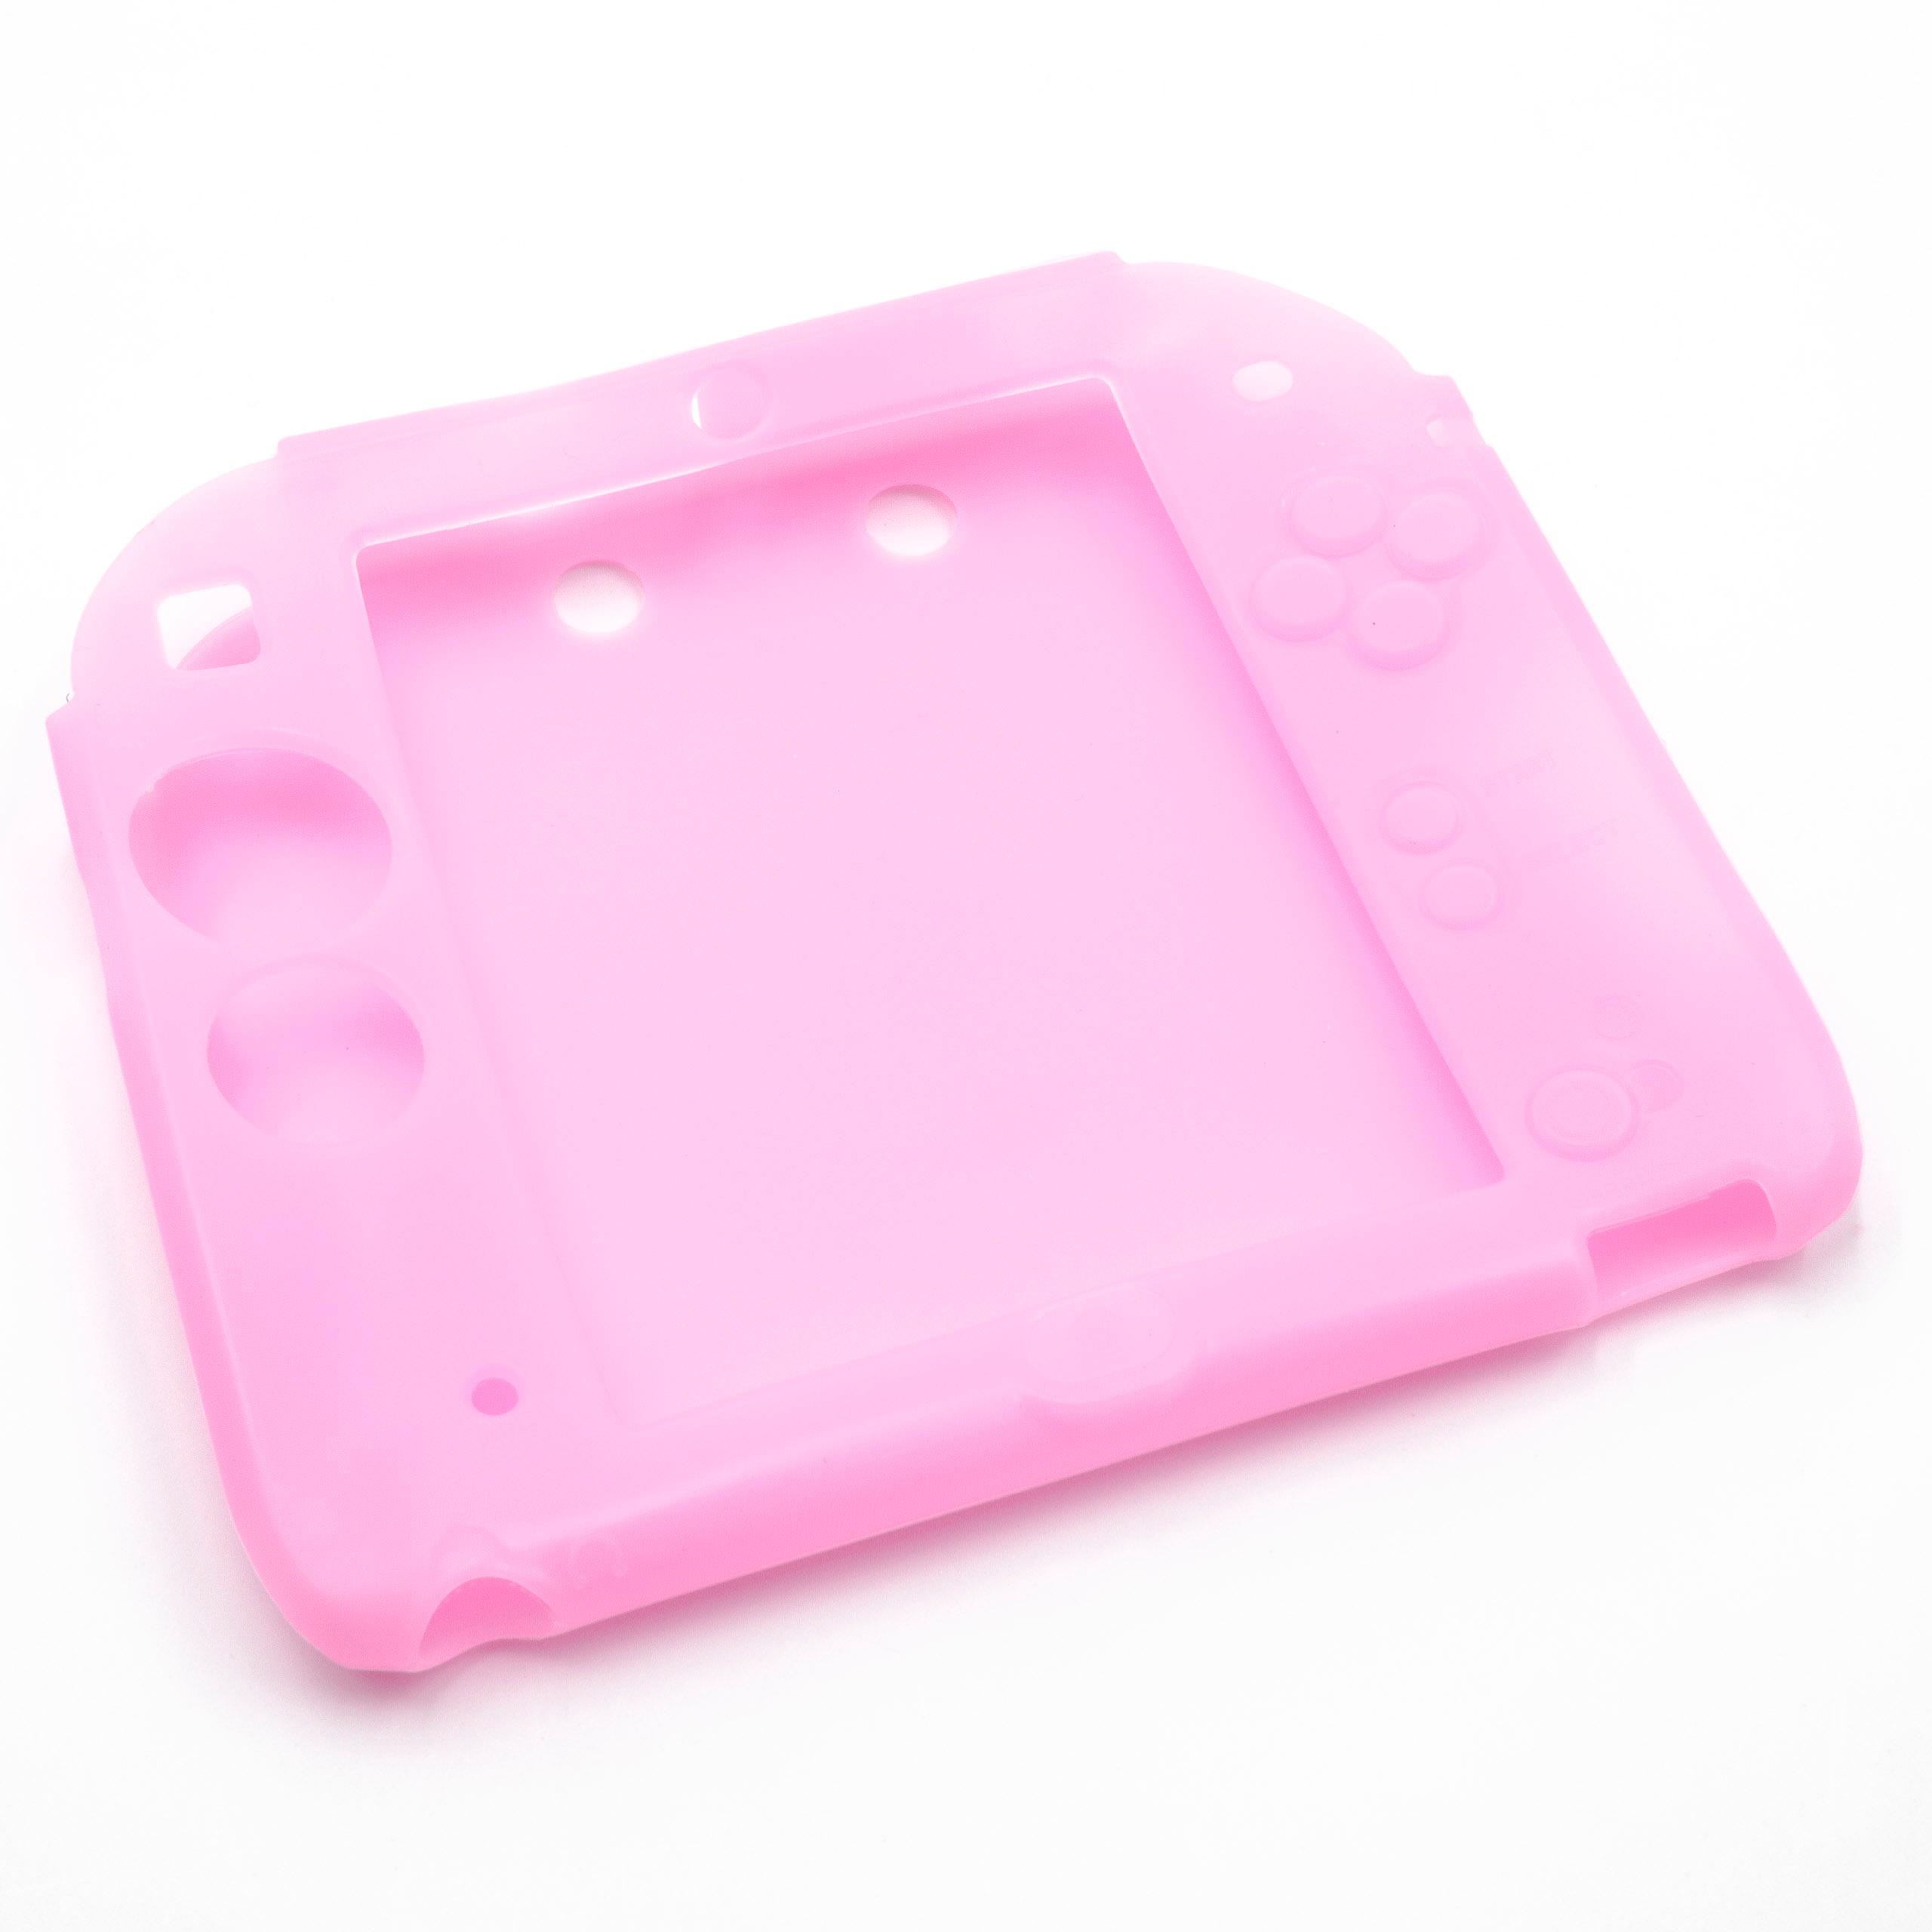 Hülle passend für Nintendo 2DS Spielekonsole - Case Silikon Rosa